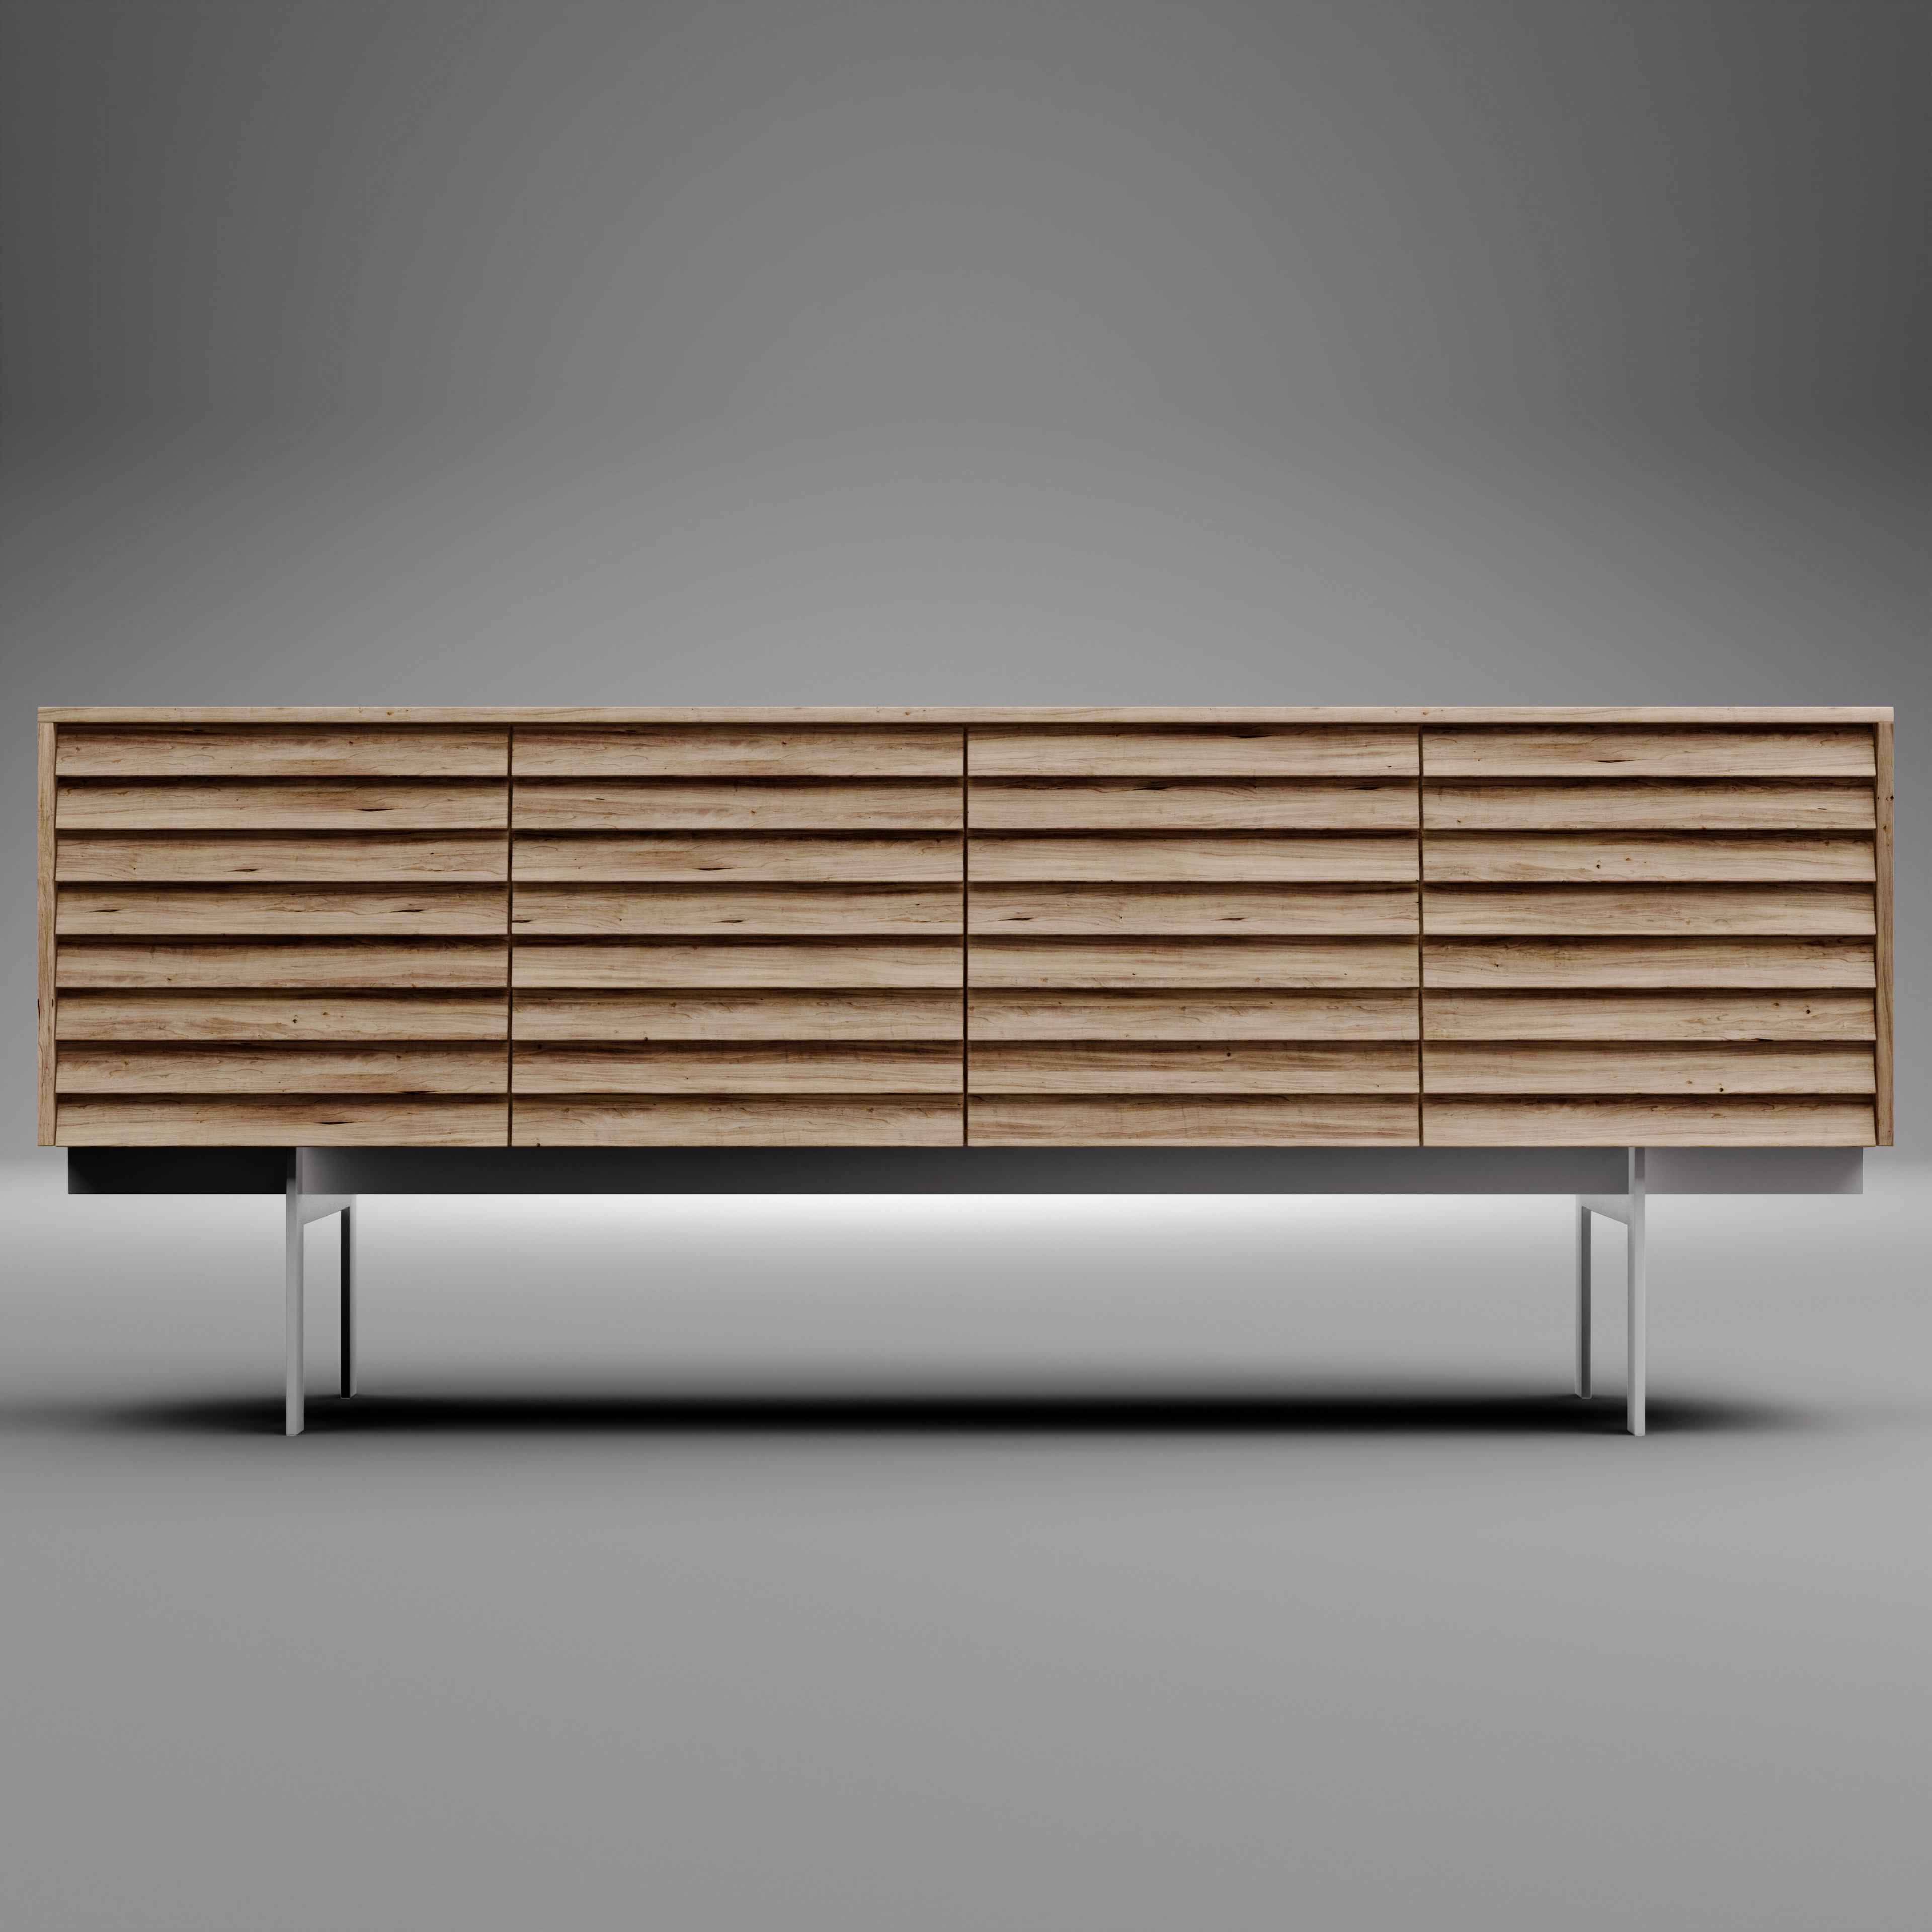 Furniture Design Concept for a Sideboard
3D Model can be downloaded on 
Artstation:
https://valdrinshkreli.com/store/802V/sideboard-002-incl-blender-animation
Gumroad:
https://gumroad.com/l/sideboard002